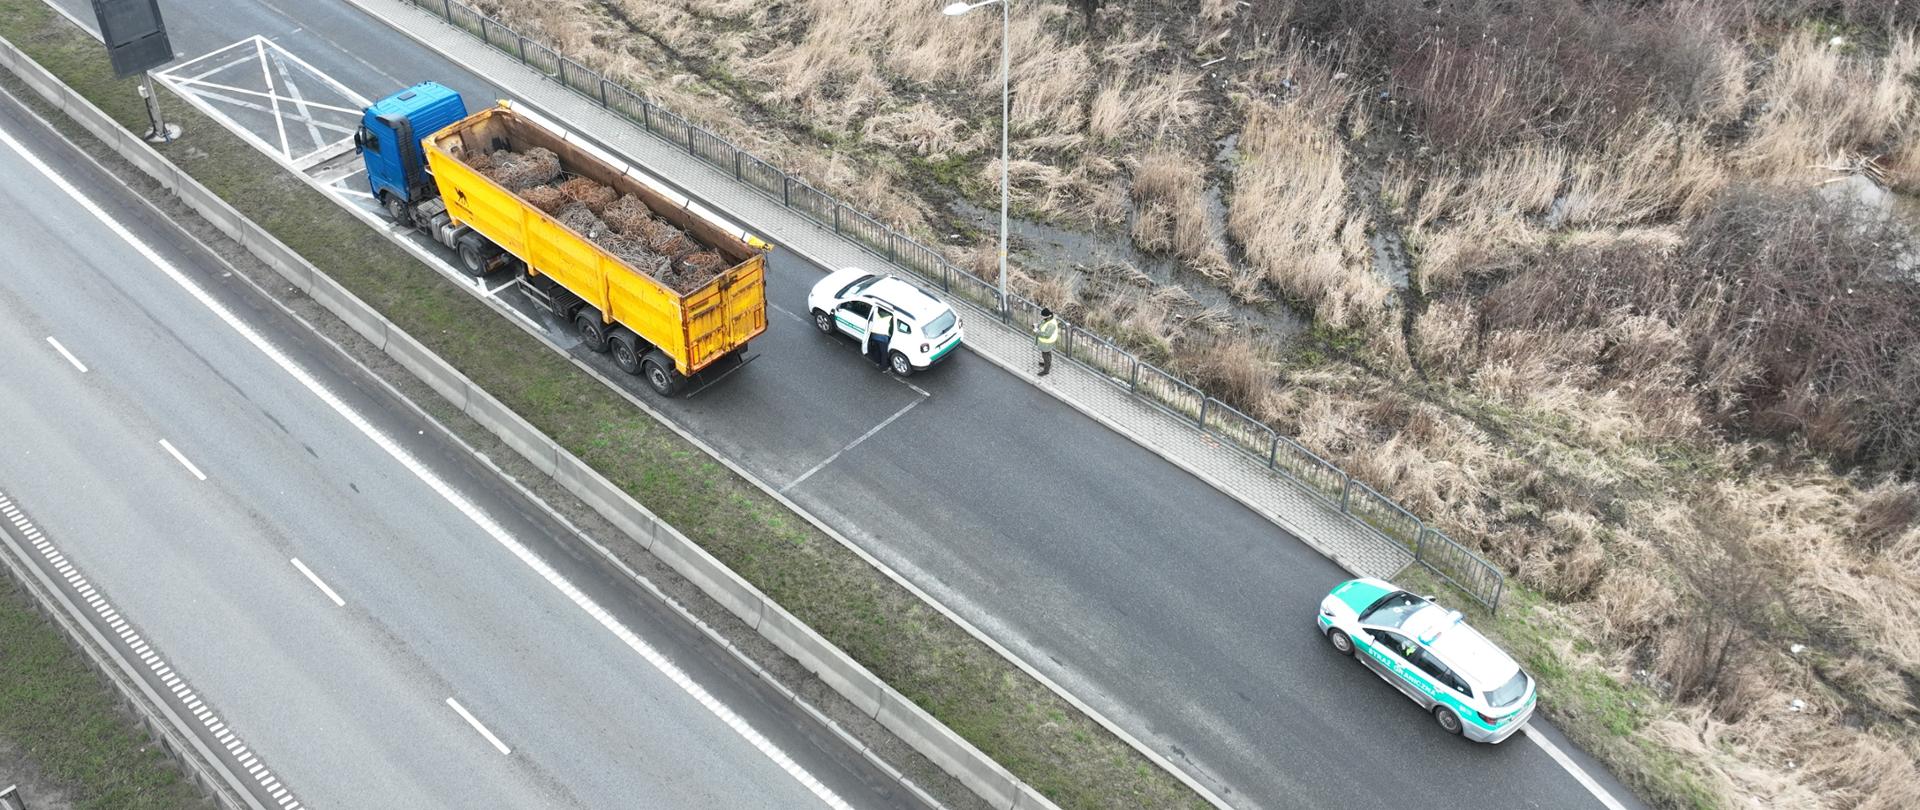 Widok z góry na pojazd ciężarowy transportujący odpady z obróbki metali, po prawej stronie dwa oznakowane pojazdy: Inspekcji Ochrony Środowisko oraz Straży Granicznej;